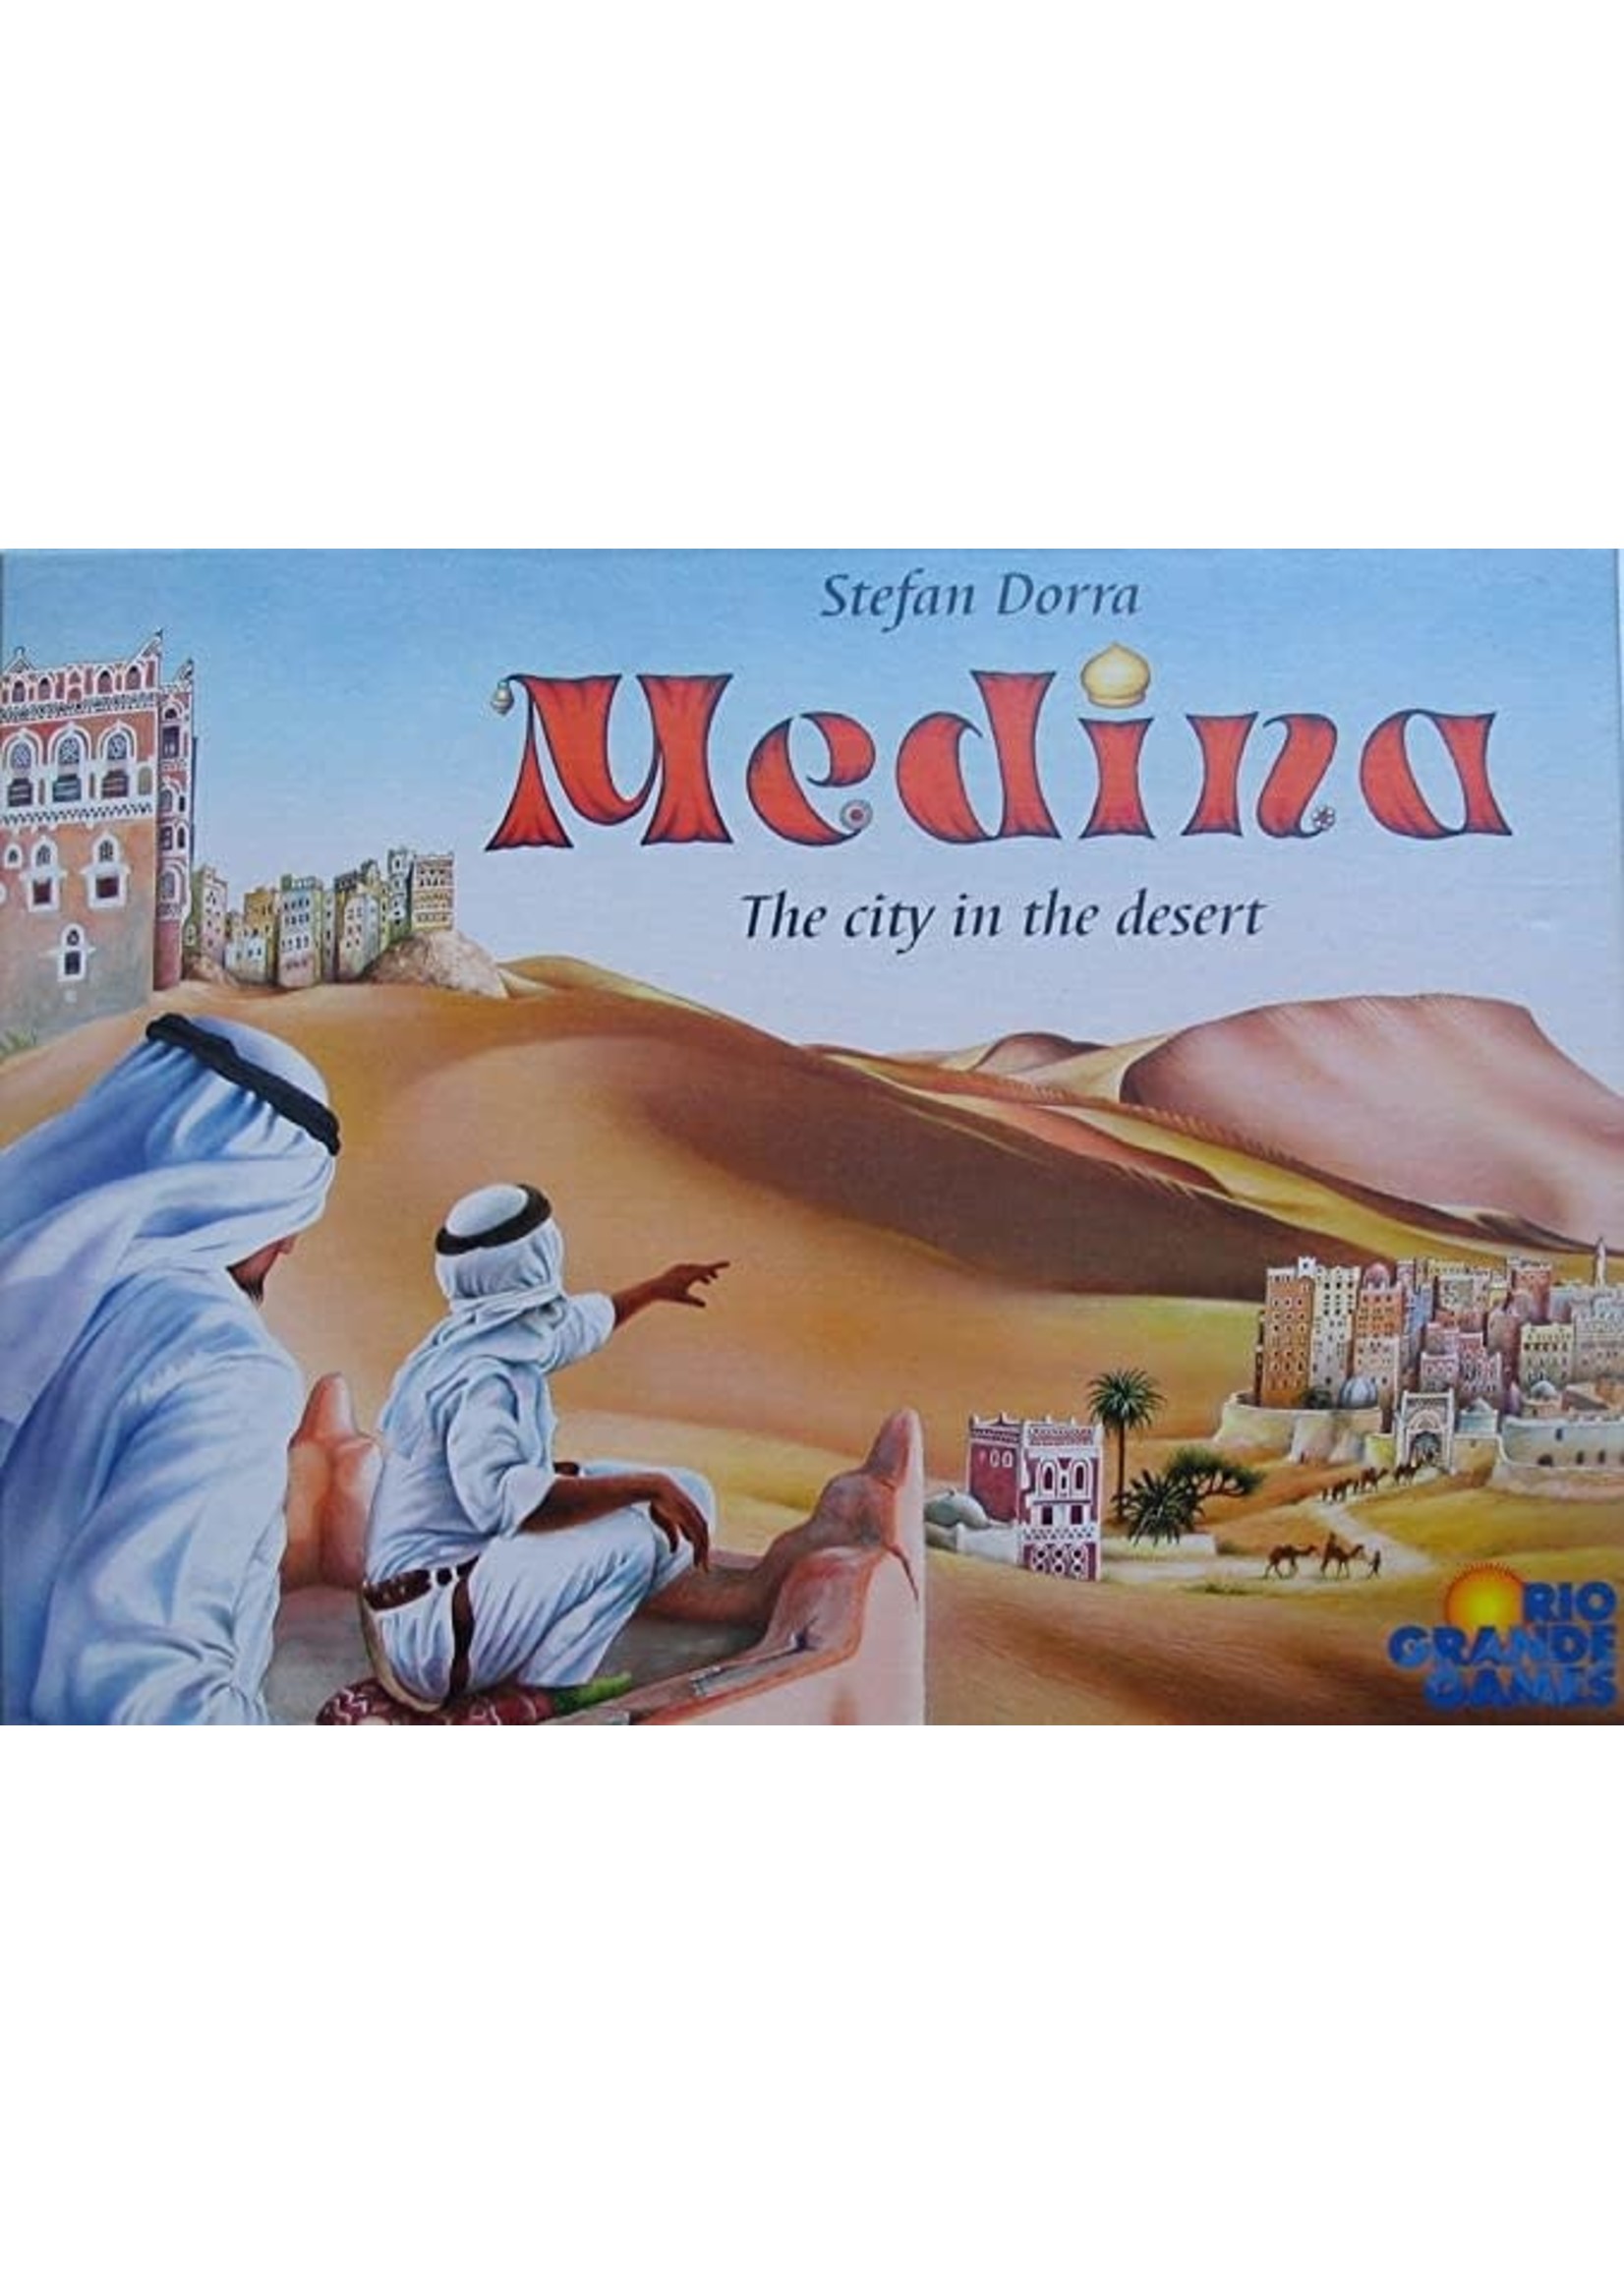 Rental RENTAL - Medina, City in the Desert 3 Lb. 3.6oz